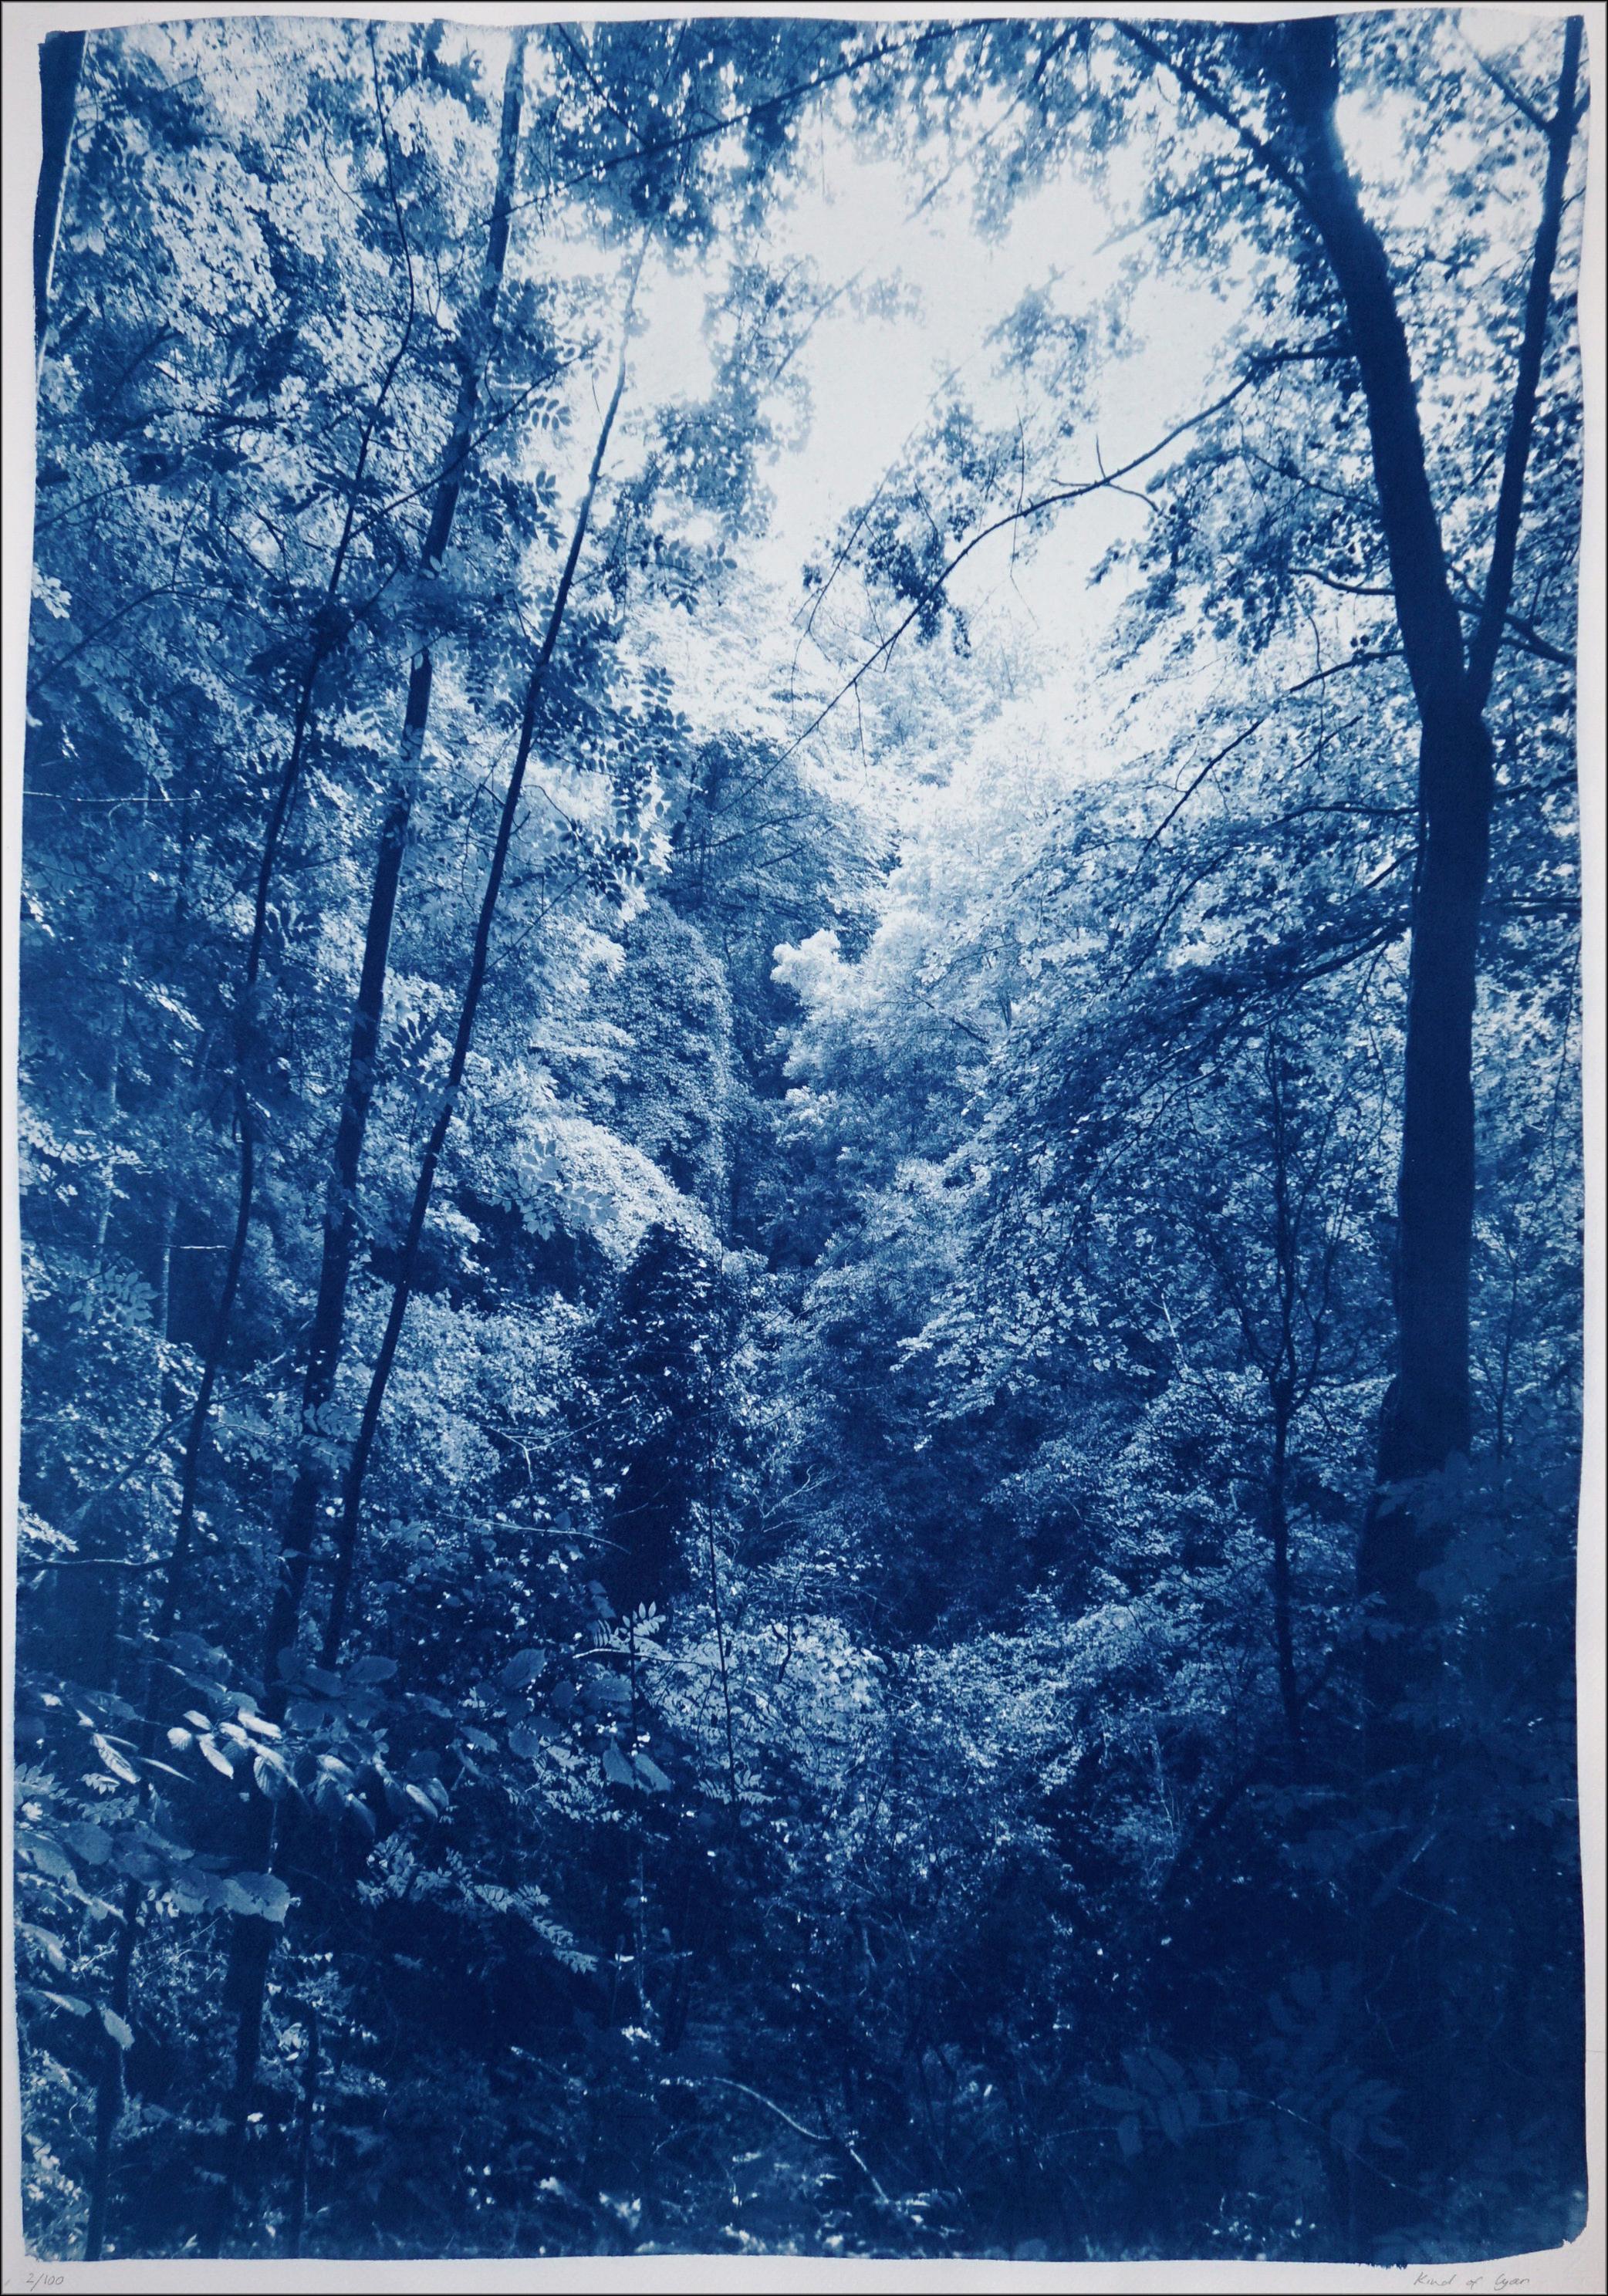 Landscape Print Kind of Cyan - Légère lumière dans les bois, paysage forestier, tons bleus, impression cyanotype faite à la main